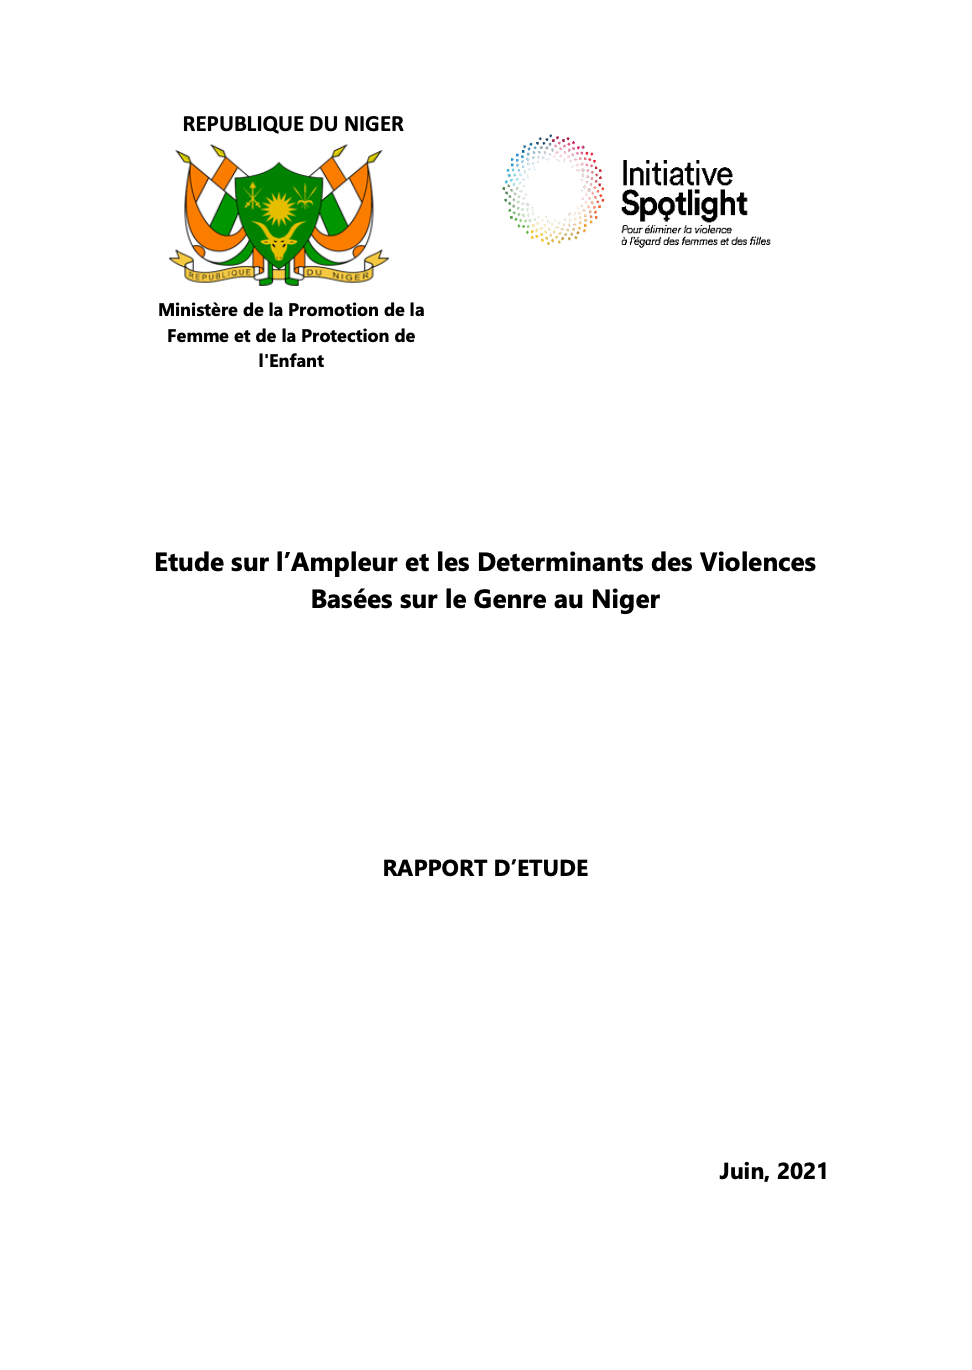 Lire la suite à propos de l’article Etude sur l’Ampleur et les Determinants des Violences Basées sur le Genre au Niger